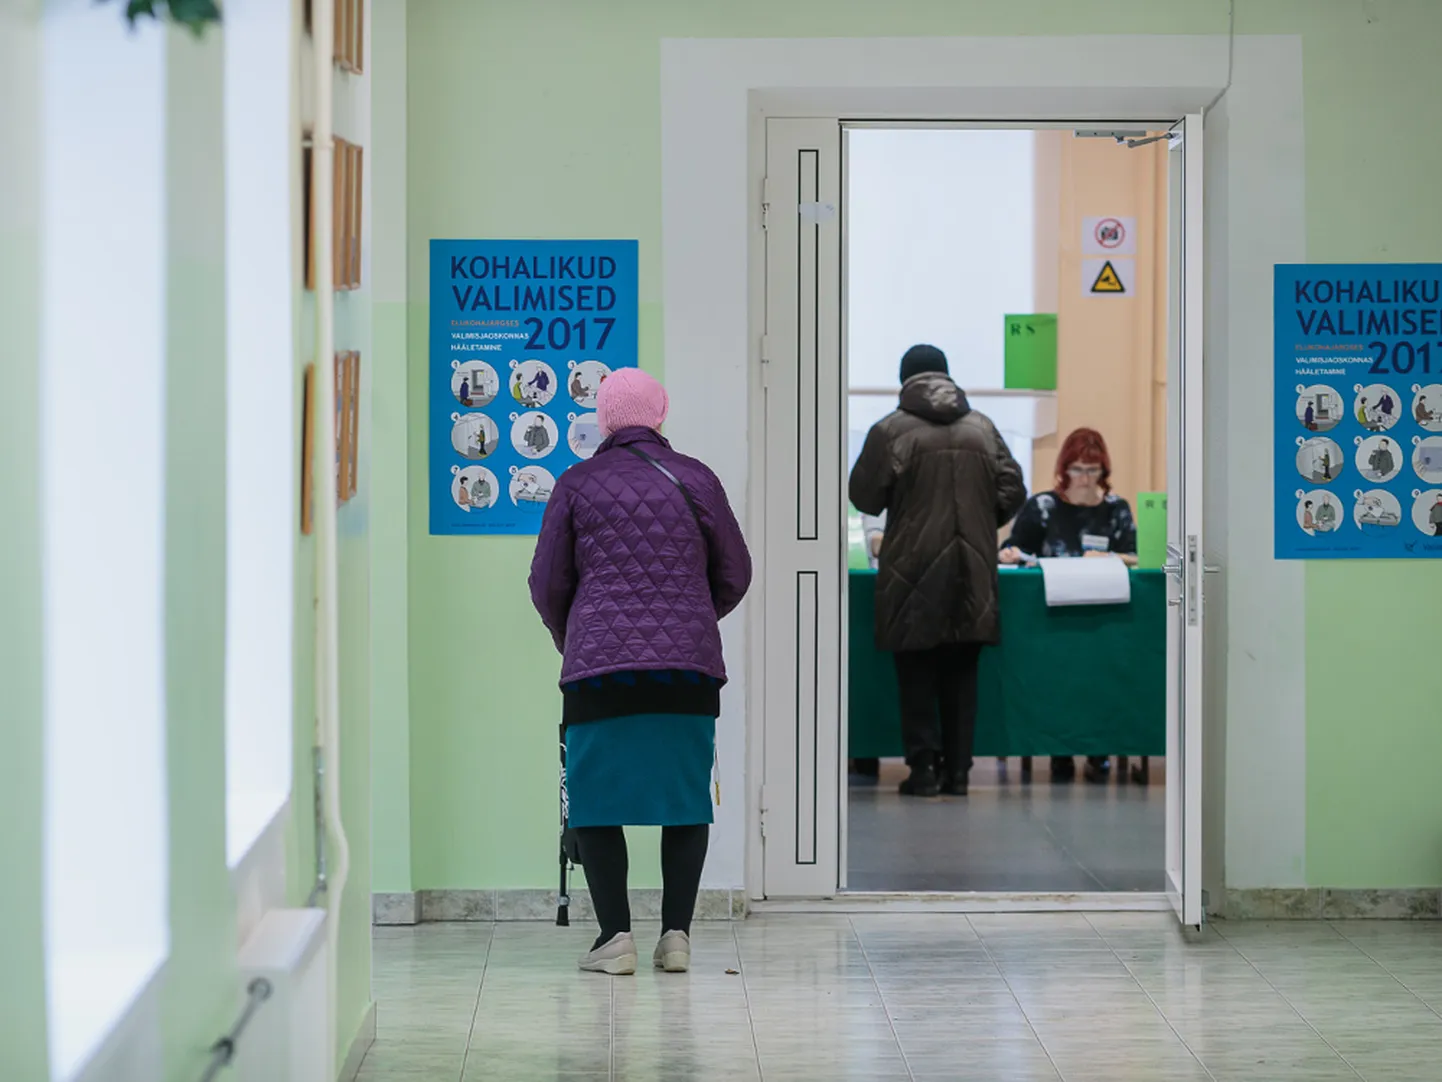 Kohalike valimiste eelhääletus Narvas. Just sellel ajal toimusid mullu ka väidetavad häälteostmised, kus valijatele pakuti hääle eest 10 eurot. Foto on illustratiivne.

ILJA SMIRNOV